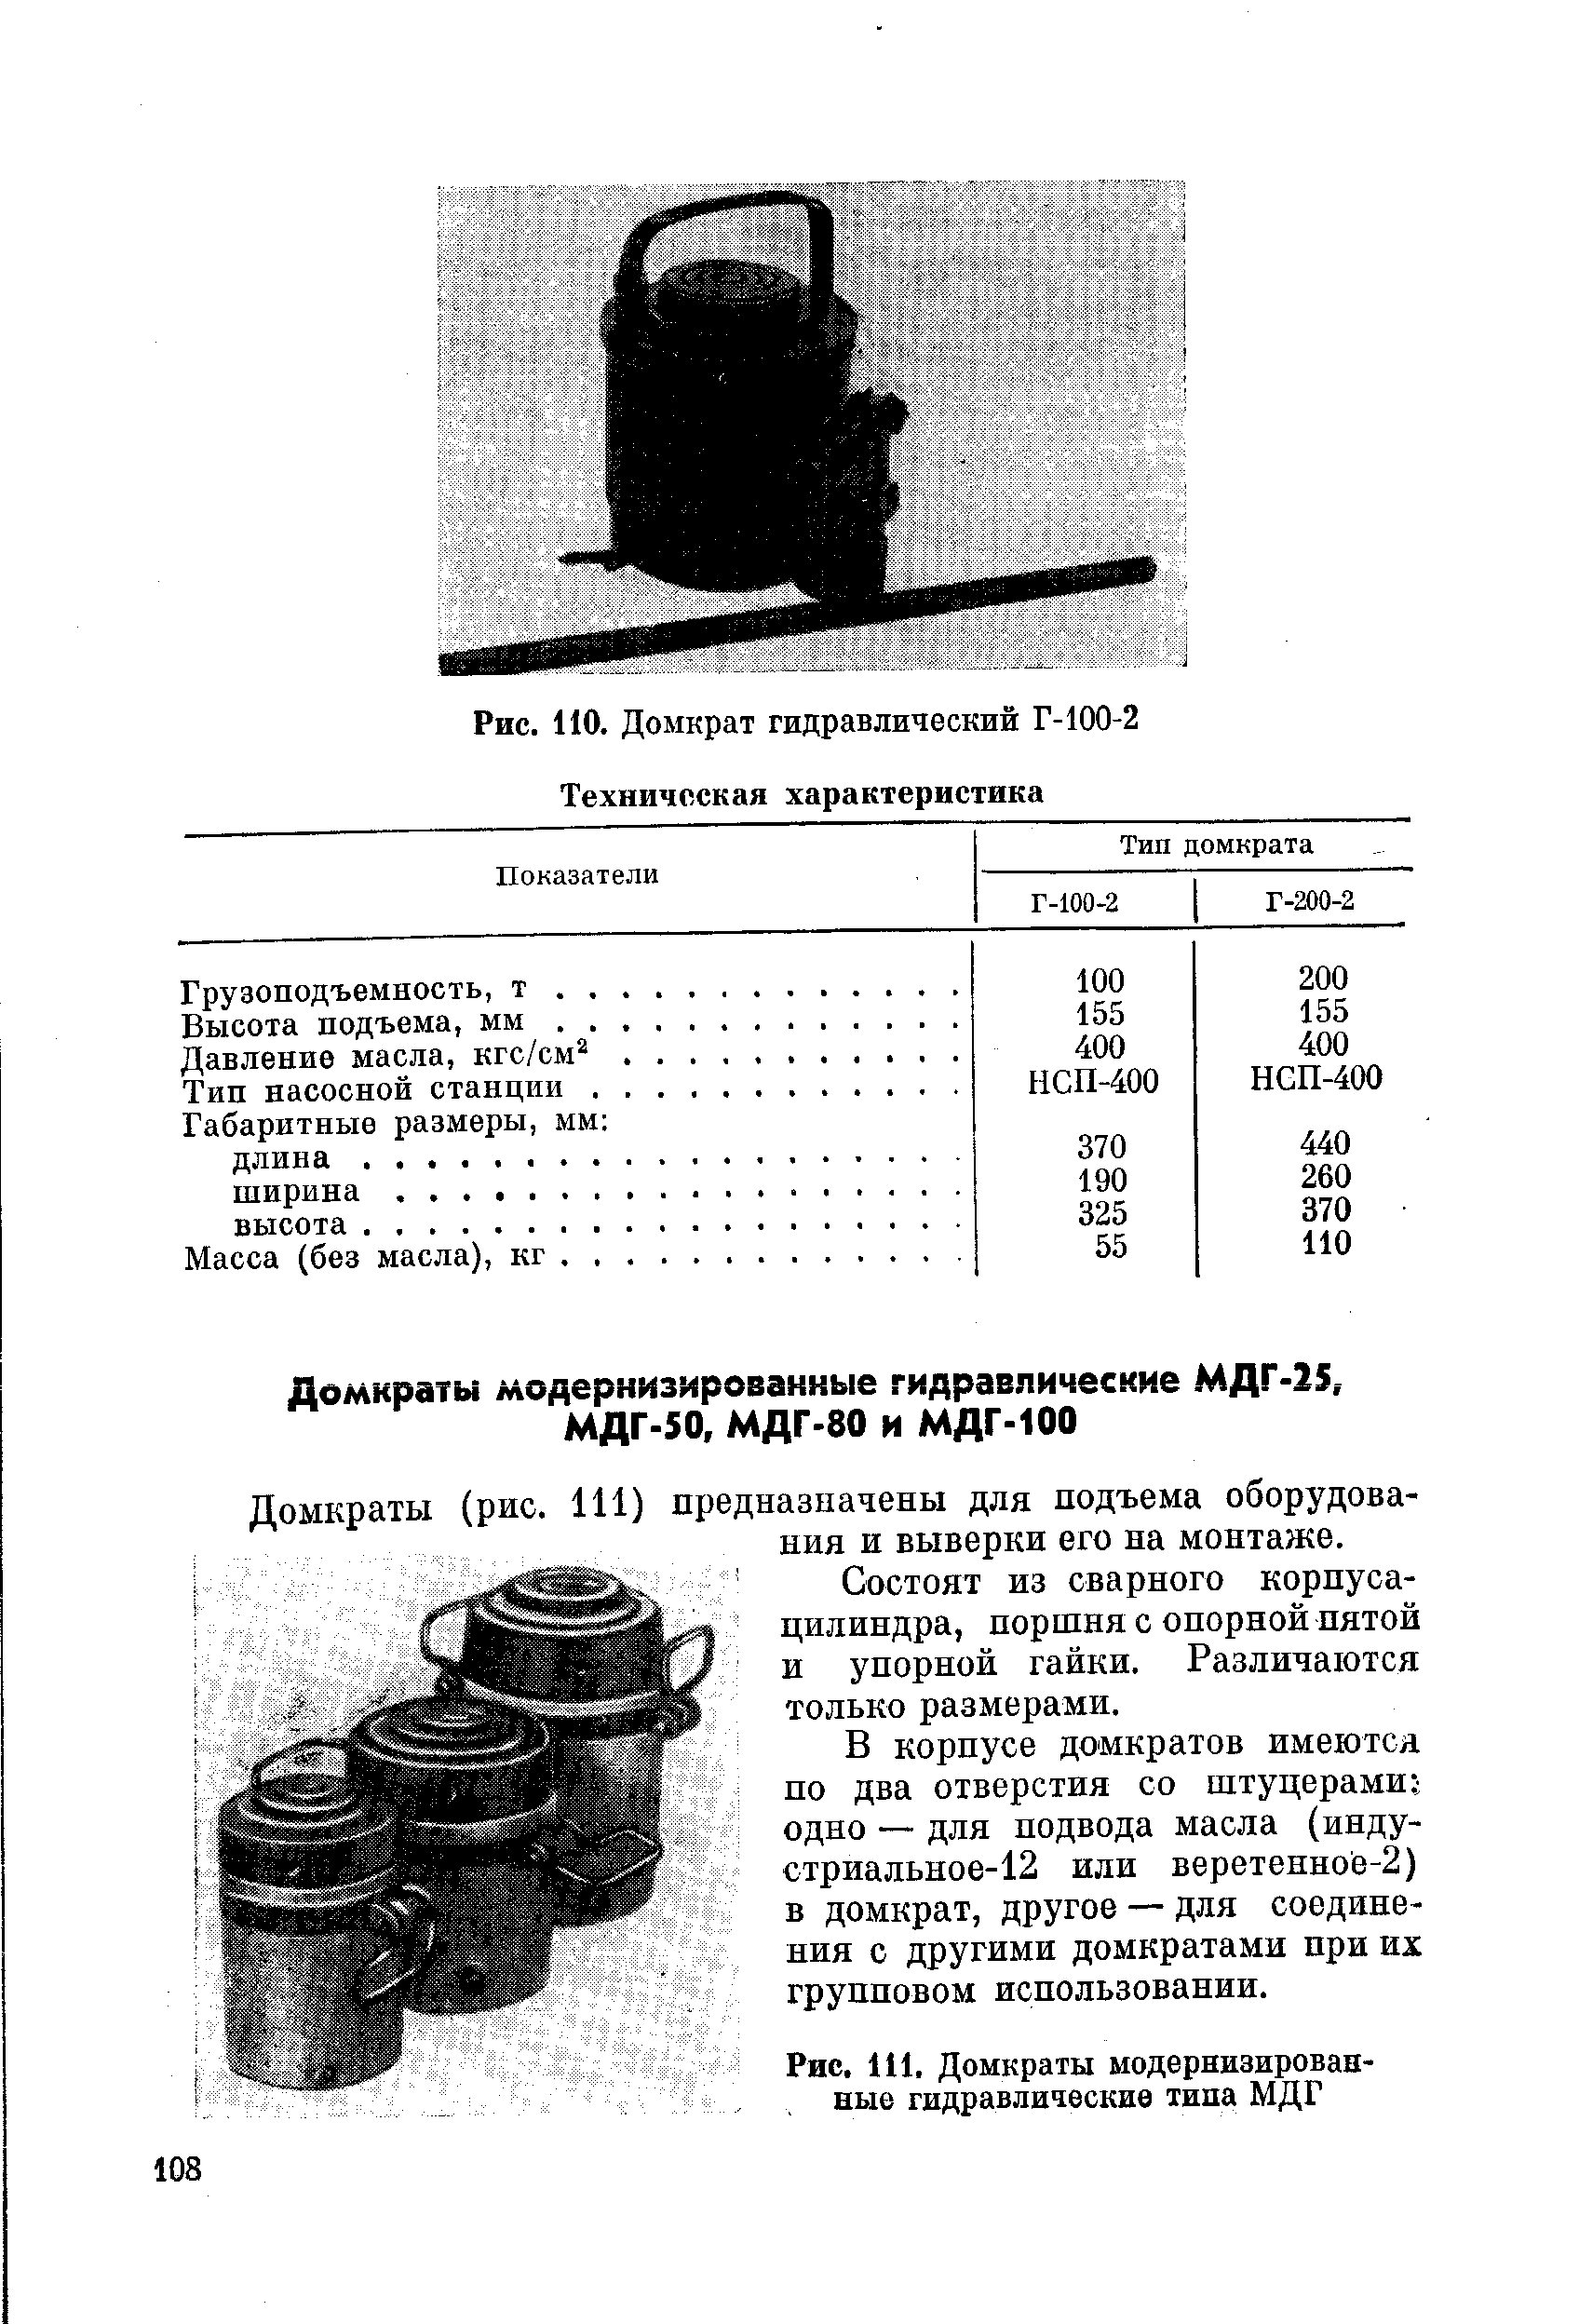 Рис. 111. Домкраты модернизированные гидравлические типа МДГ
